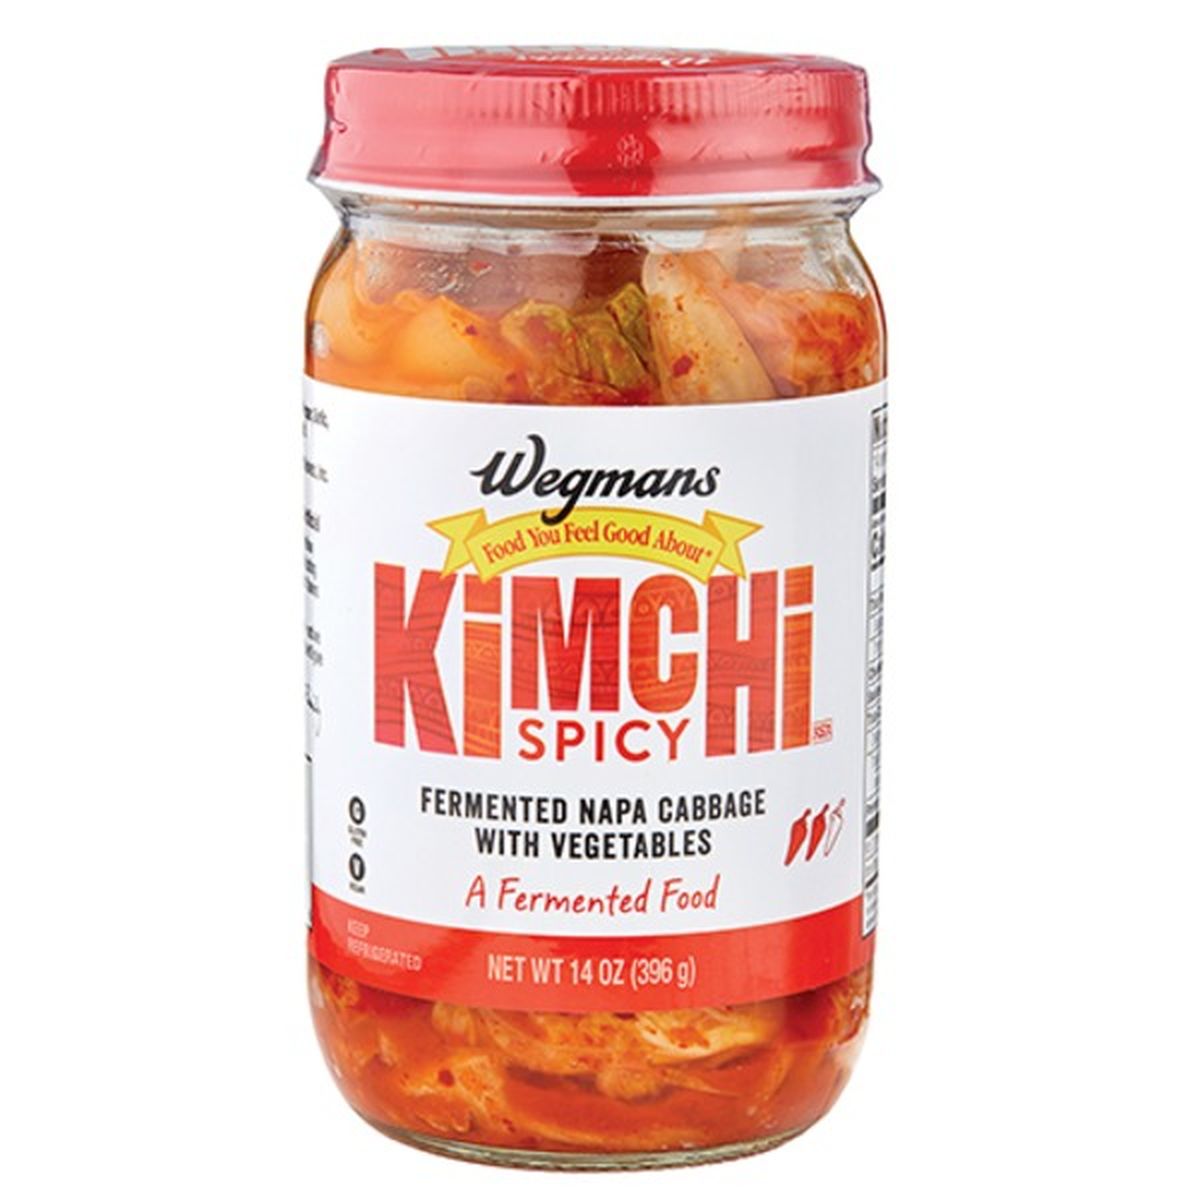 Calories in Wegmans Spicy Kimchi